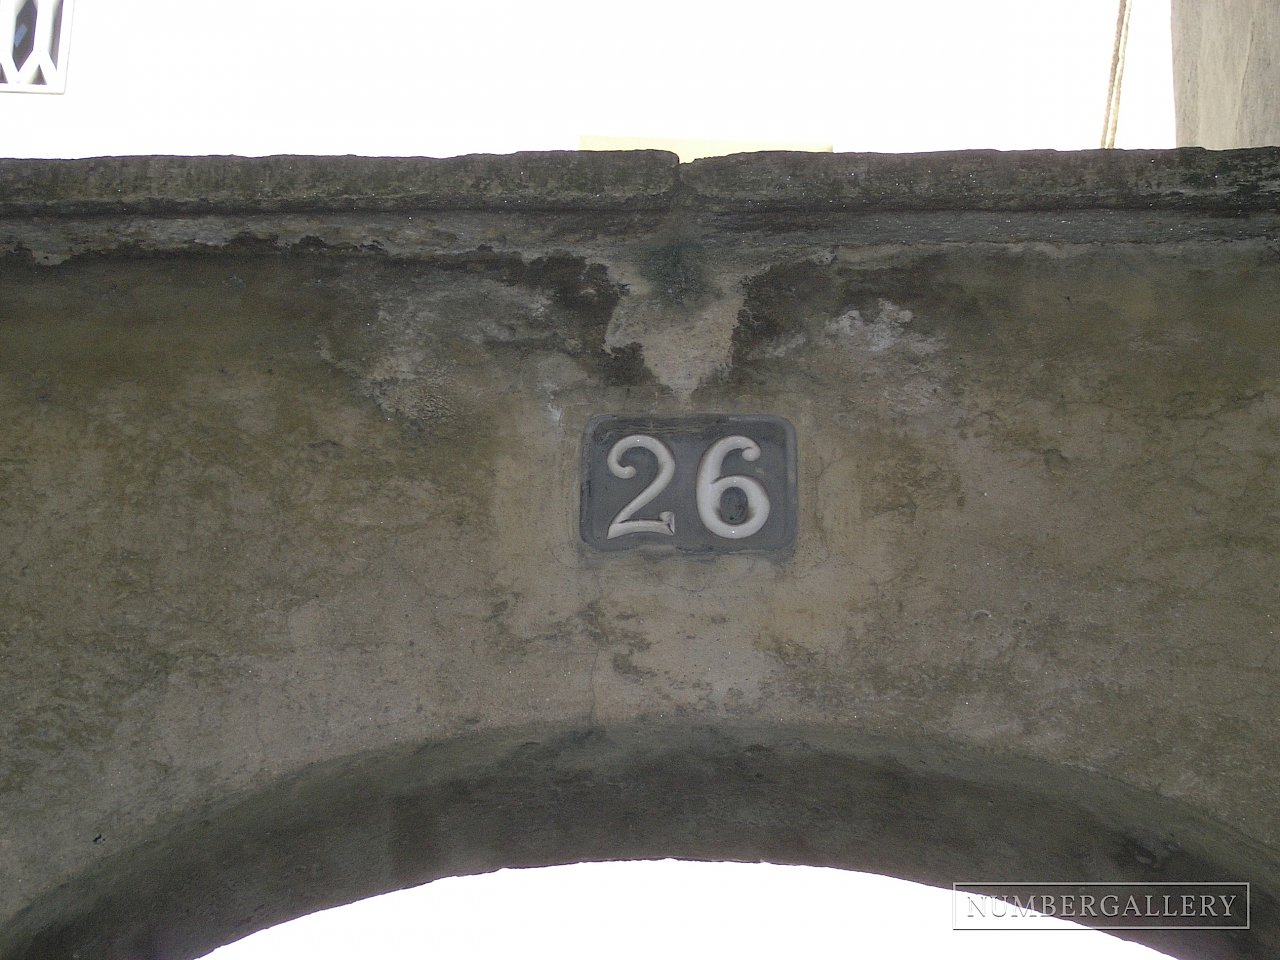 Hausnummer auf Torbogen in Lugano